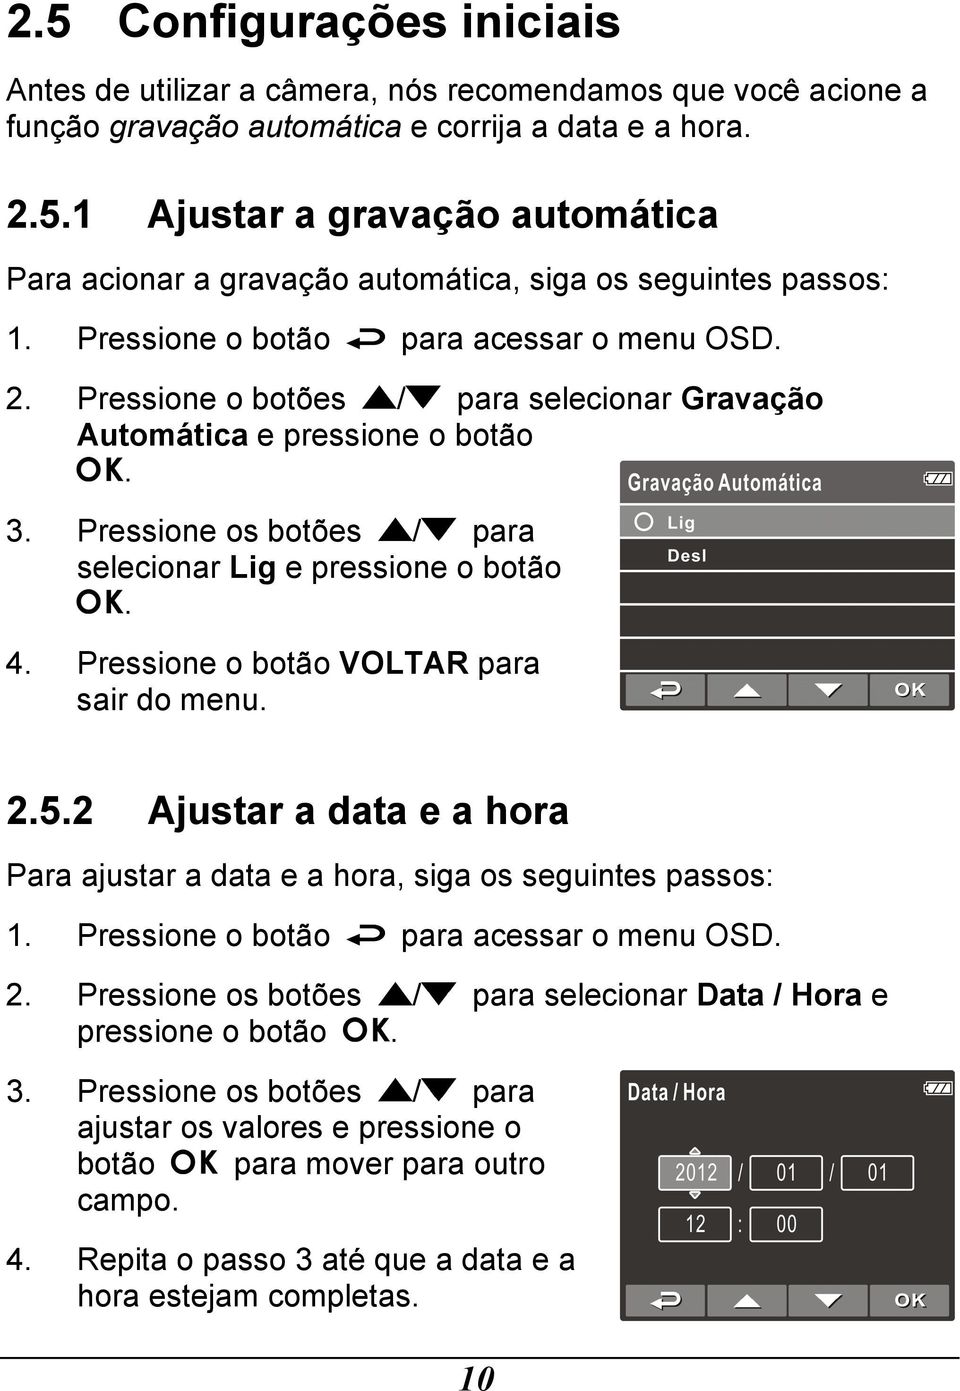 Pressione o botão VOLTAR para sair do menu. 2.5.2 Ajustar a data e a hora Para ajustar a data e a hora, siga os seguintes passos: 1. Pressione o botão para acessar o menu OSD. 2. Pressione os botões / para selecionar Data / Hora e pressione o botão.